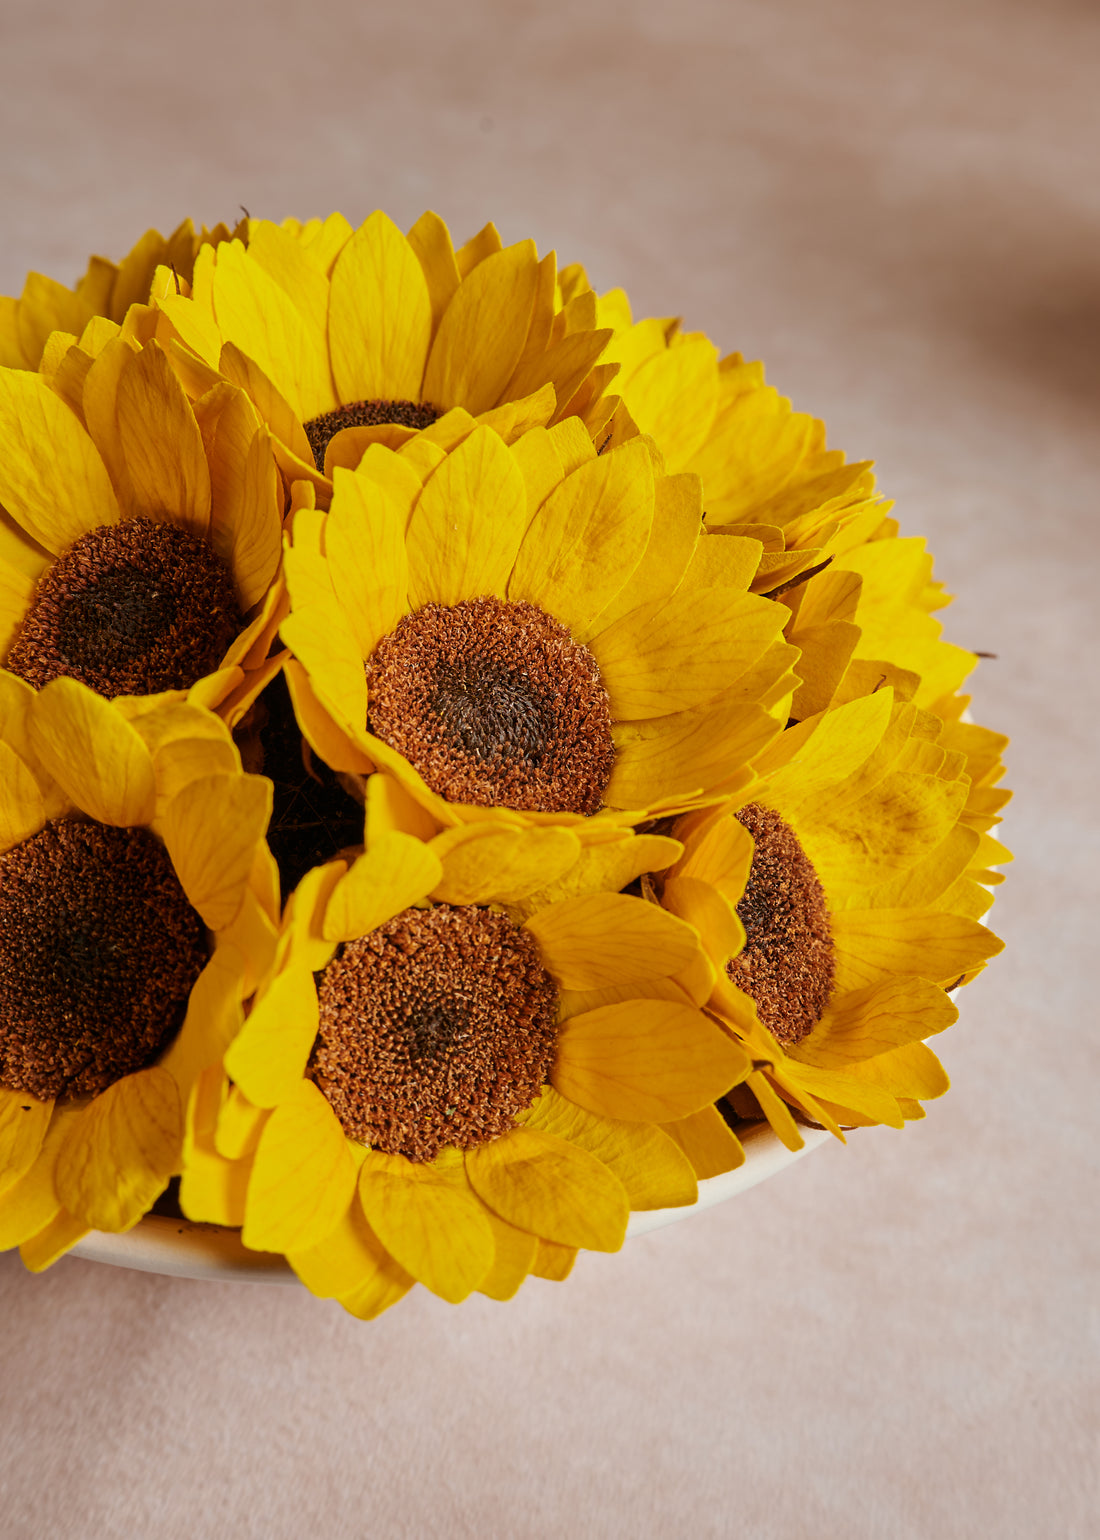 Sunflower Bowl by La Fleur Lifetime Flowers